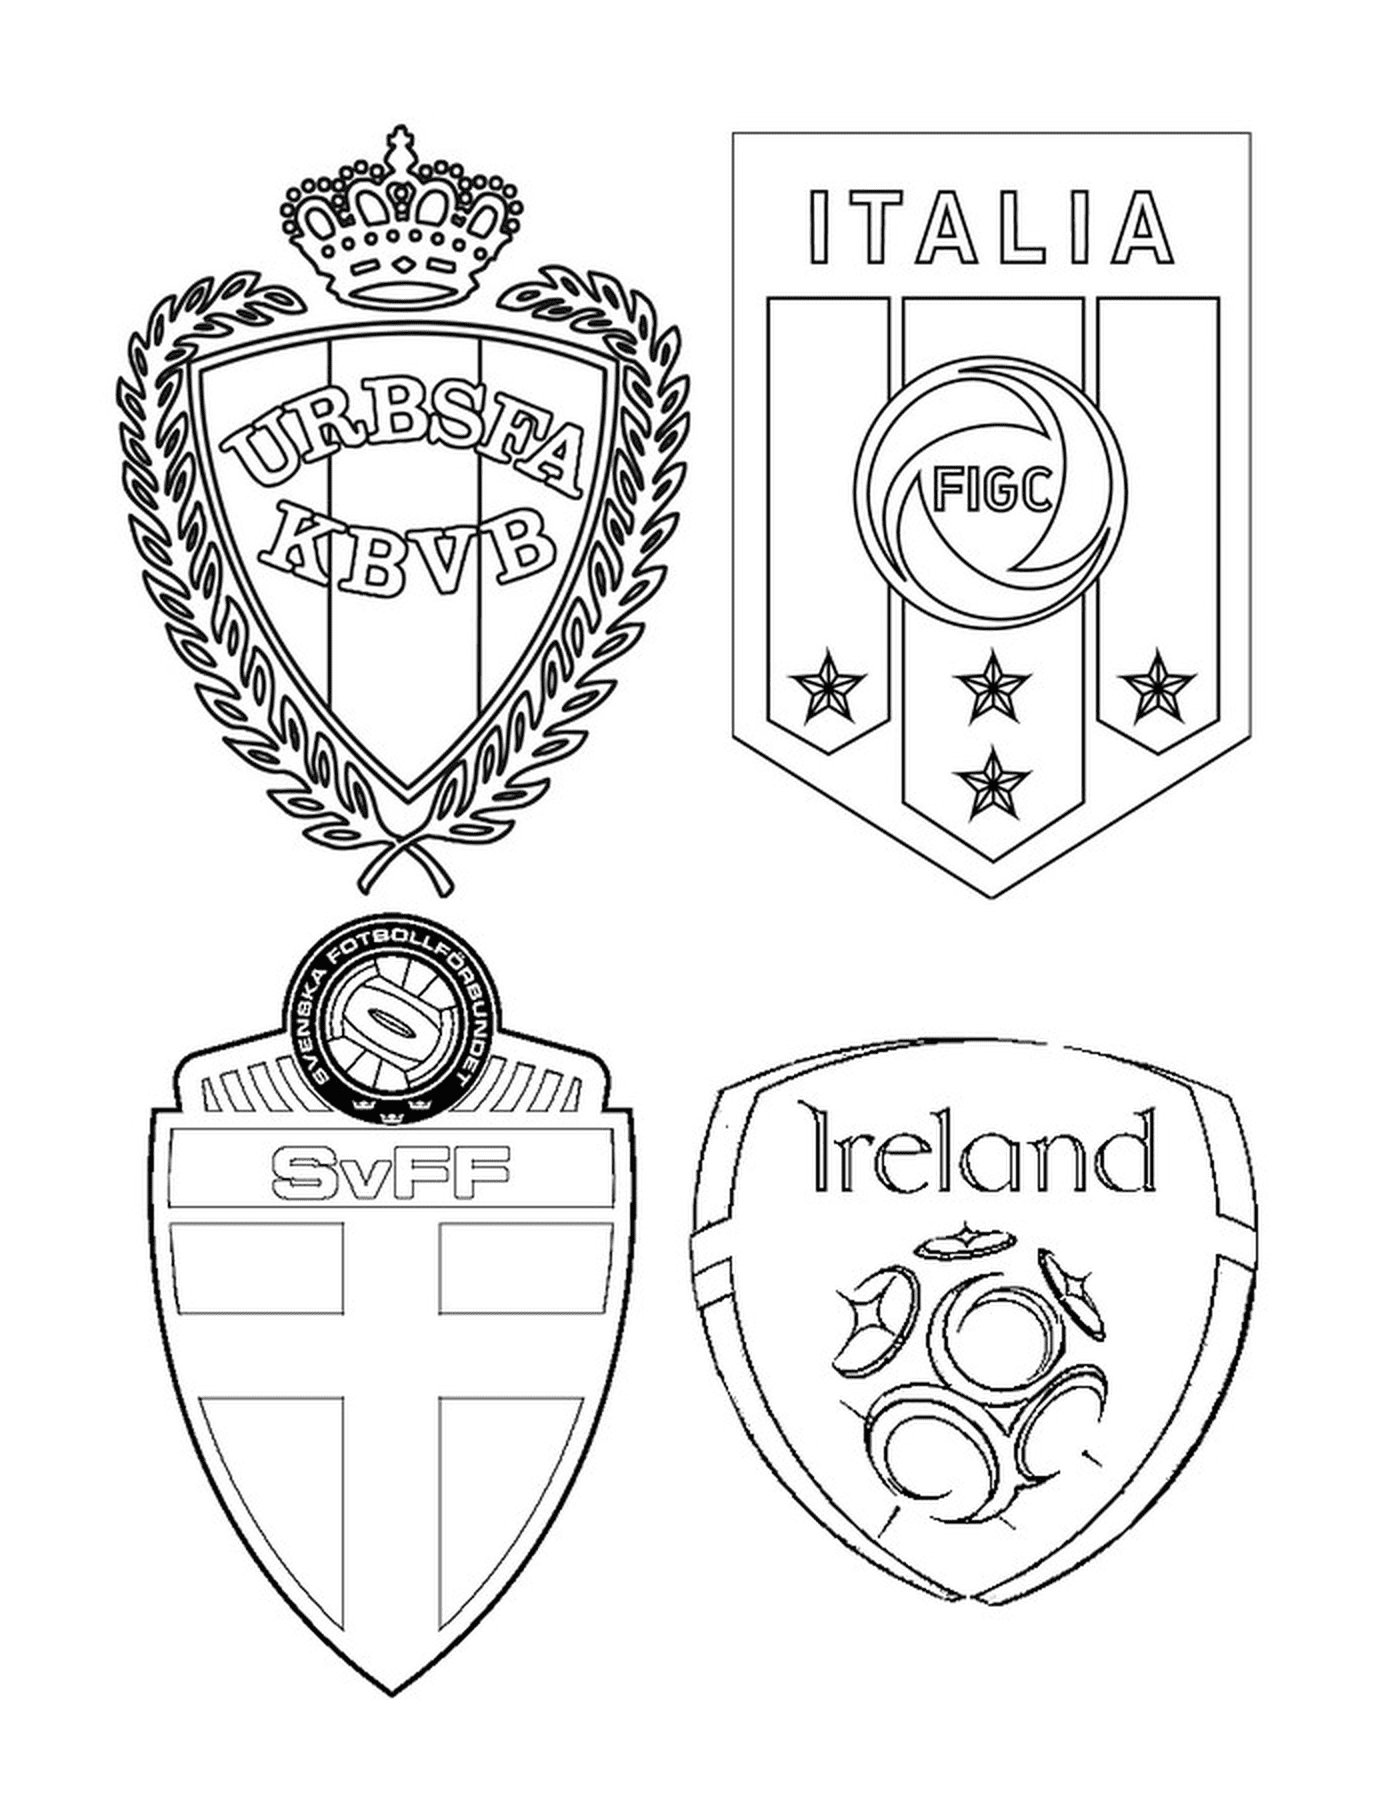  Quatro logotipos de equipe de futebol com designs diferentes 